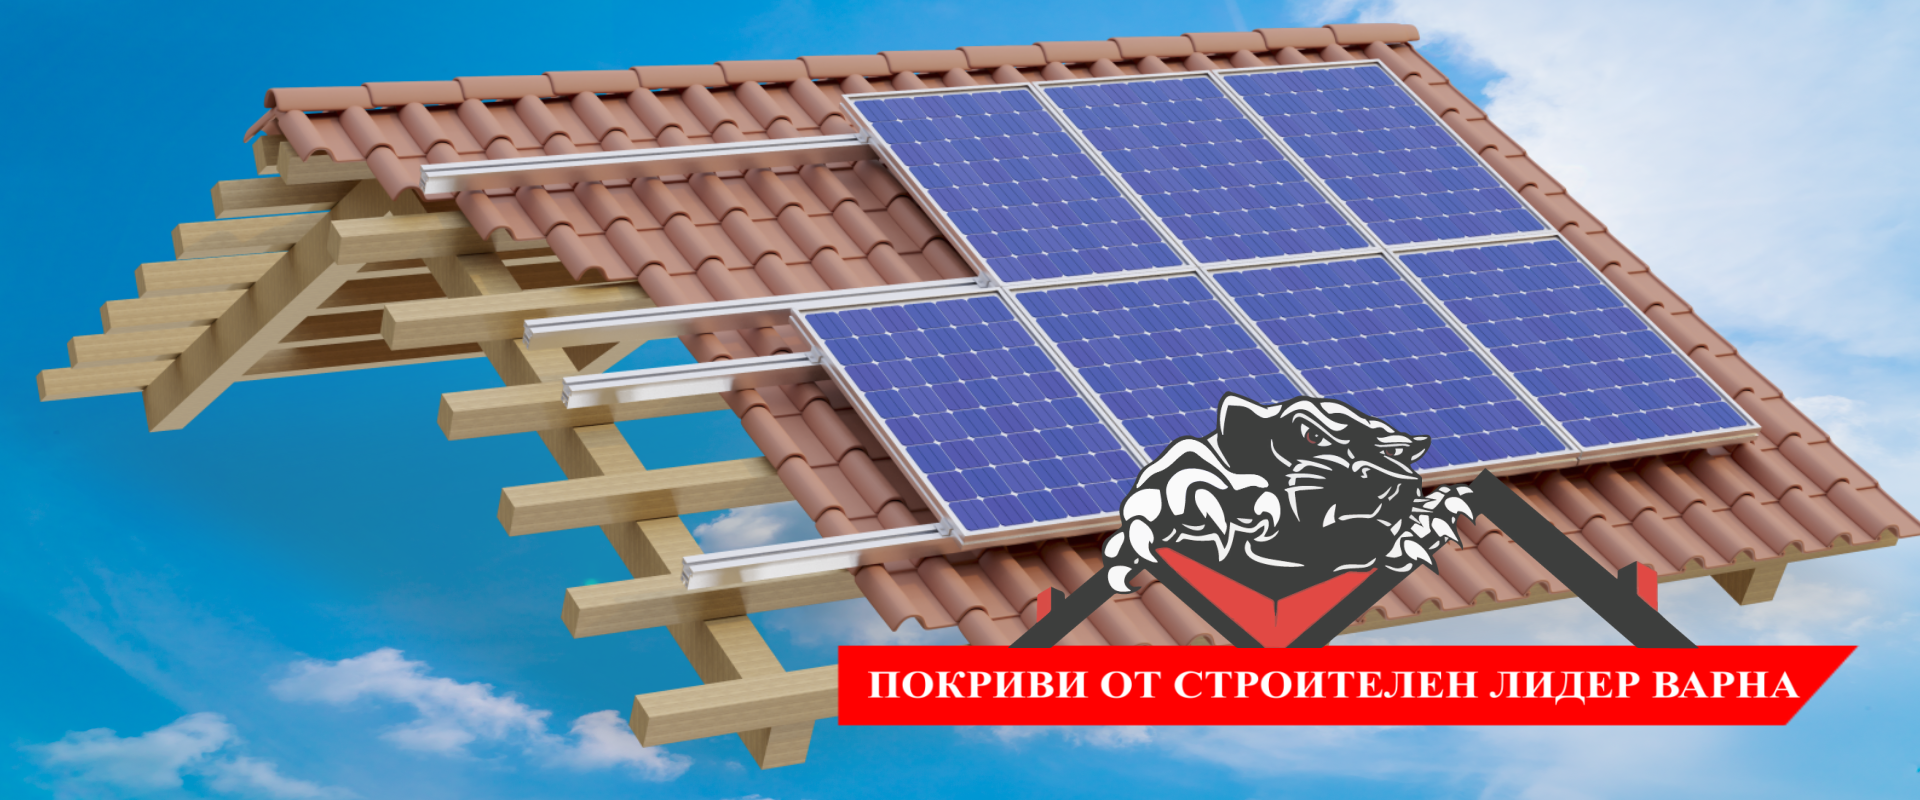 Ремонт на покриви - Строителен Лидер Варна